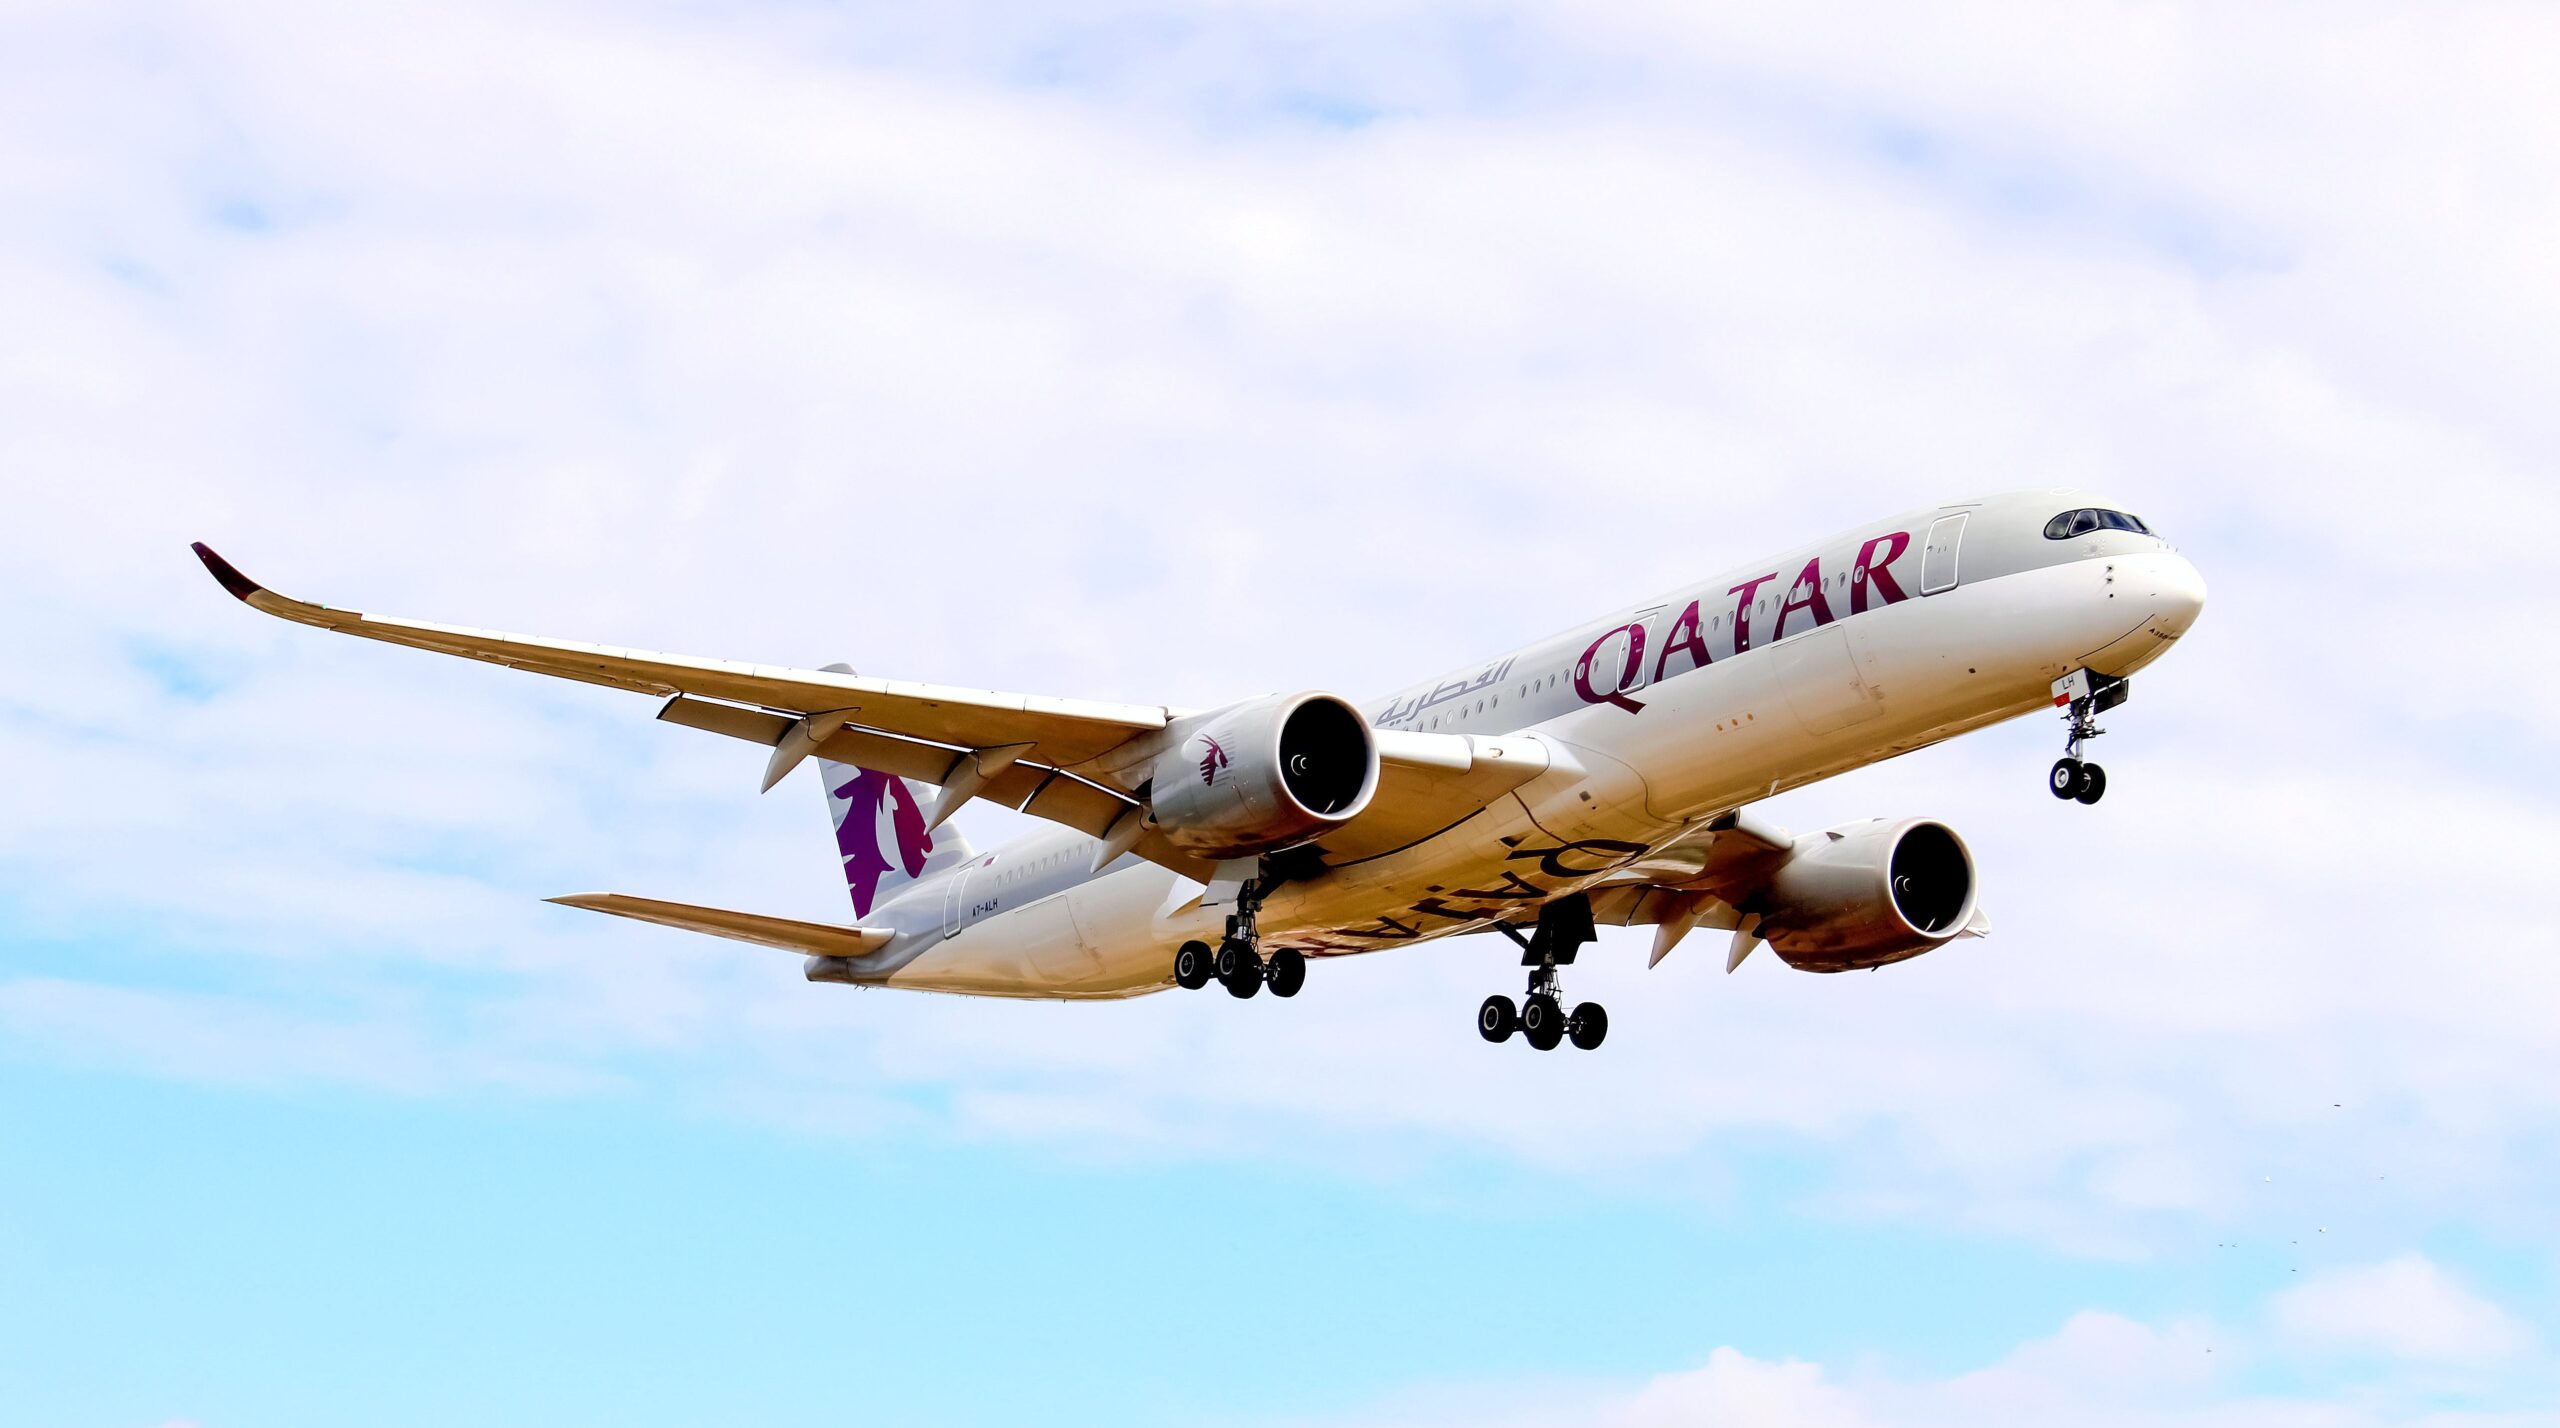 Qatar Airways voyage orgnasier envers le japan avec tut travel